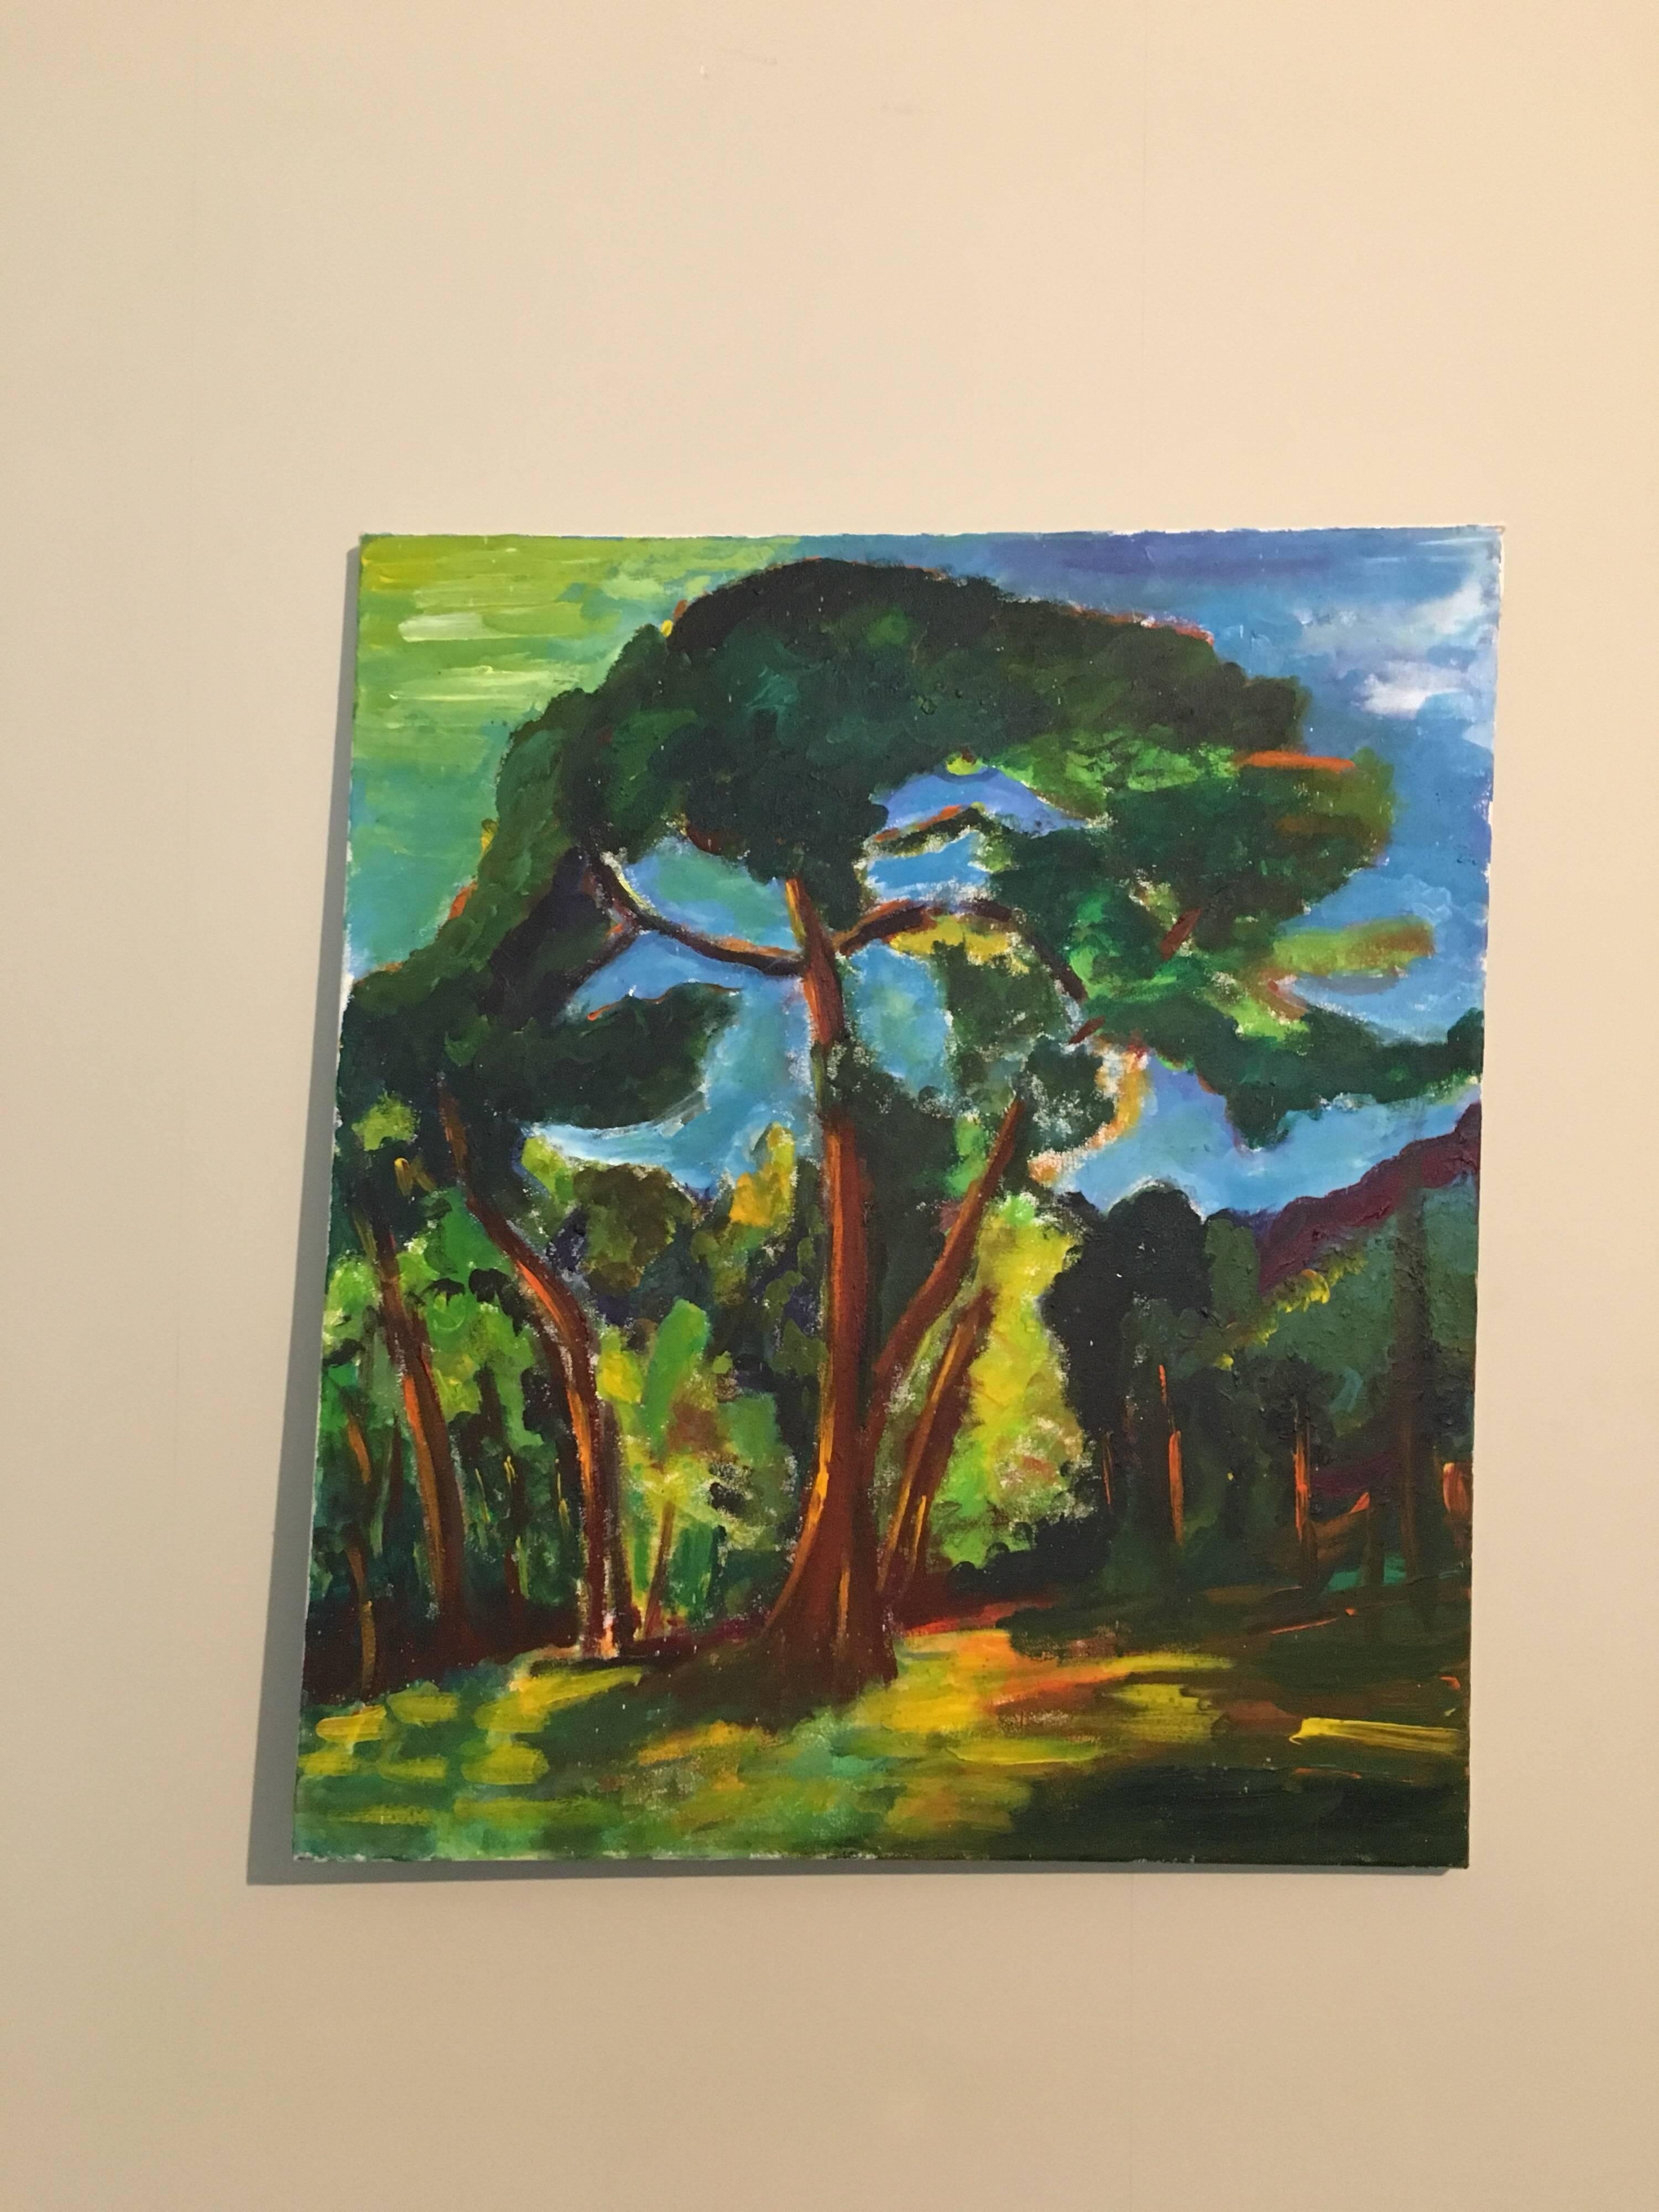 Expressionistischer expressionistischer alter Baum, Landschaft, britischer Künstler – Painting von Pamela Cawley